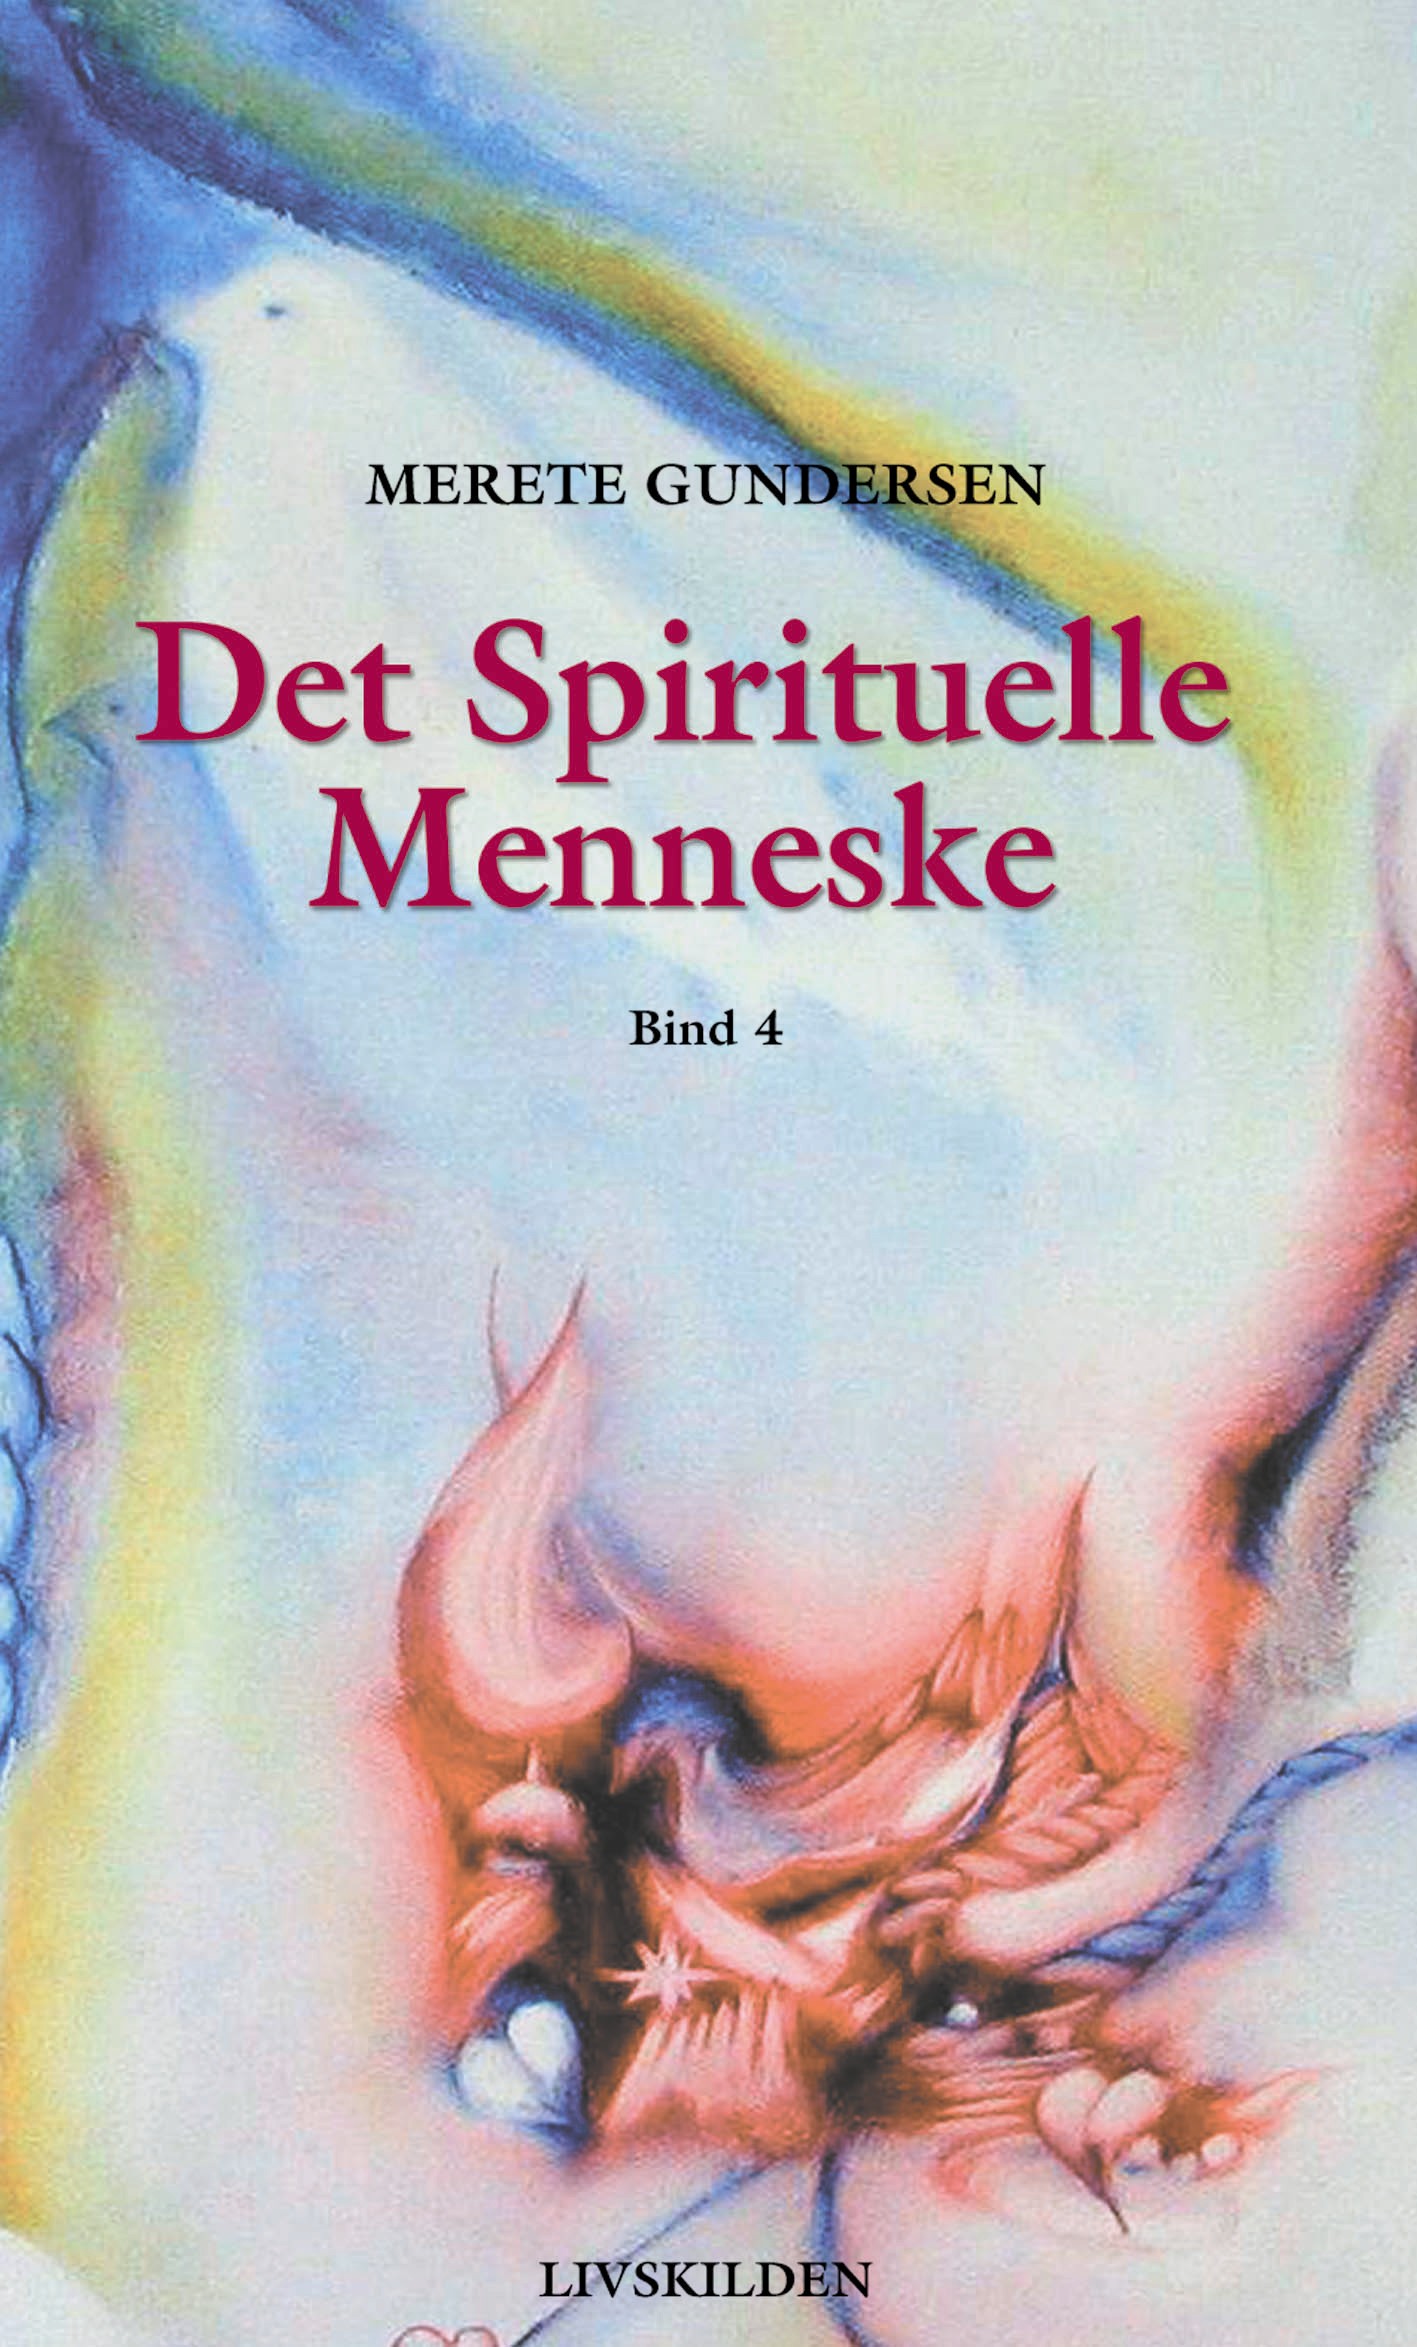 Det Spirituelle Menneske 4 af forfatter Merete Gundersen